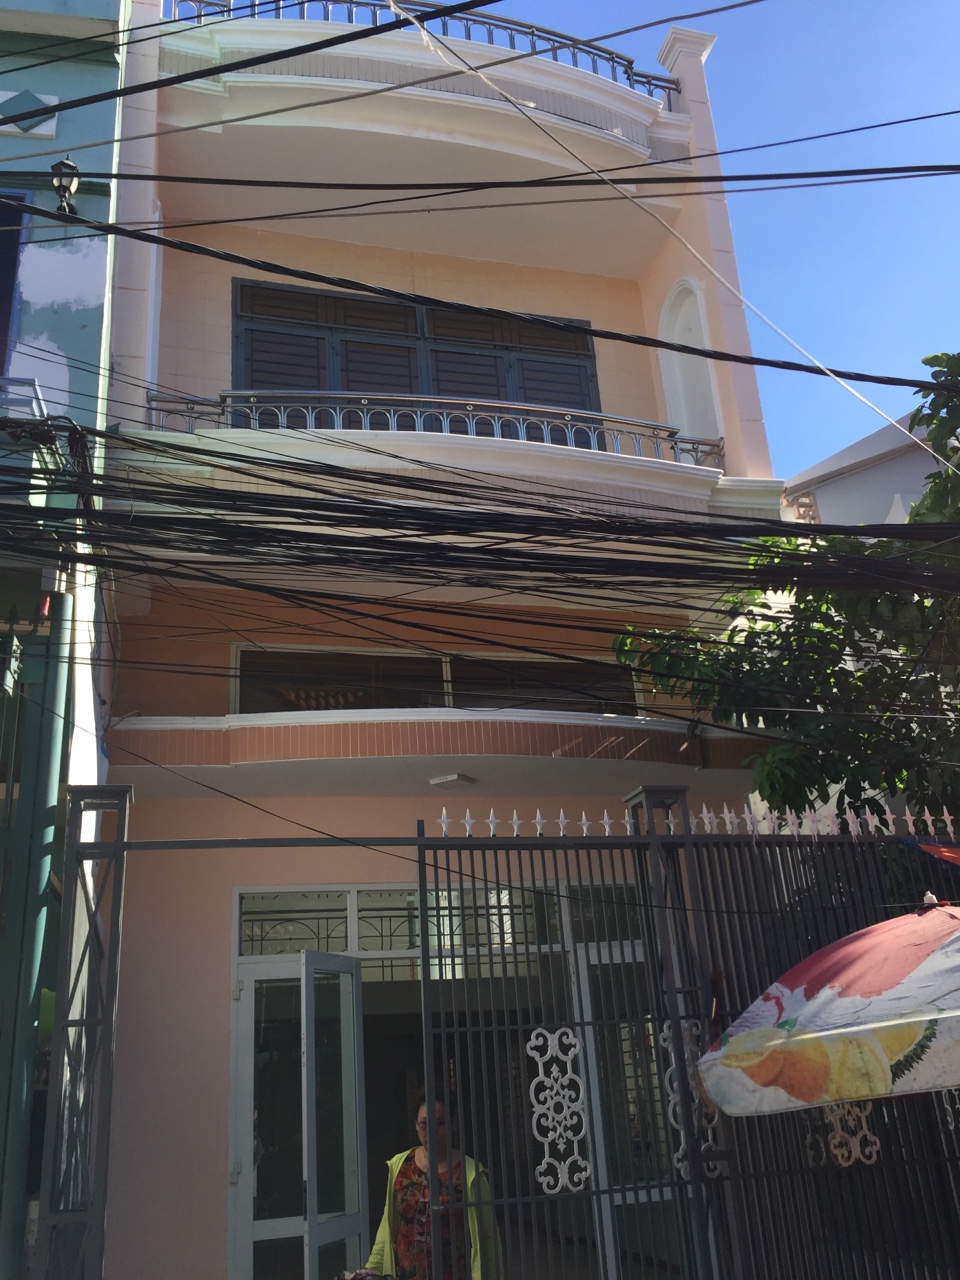 Bán nhà 96/137 Điện Biên Phủ, quận Thanh Khê, nhà 1,5 mê, 2 tầng có mê lửng, hướng Bắc